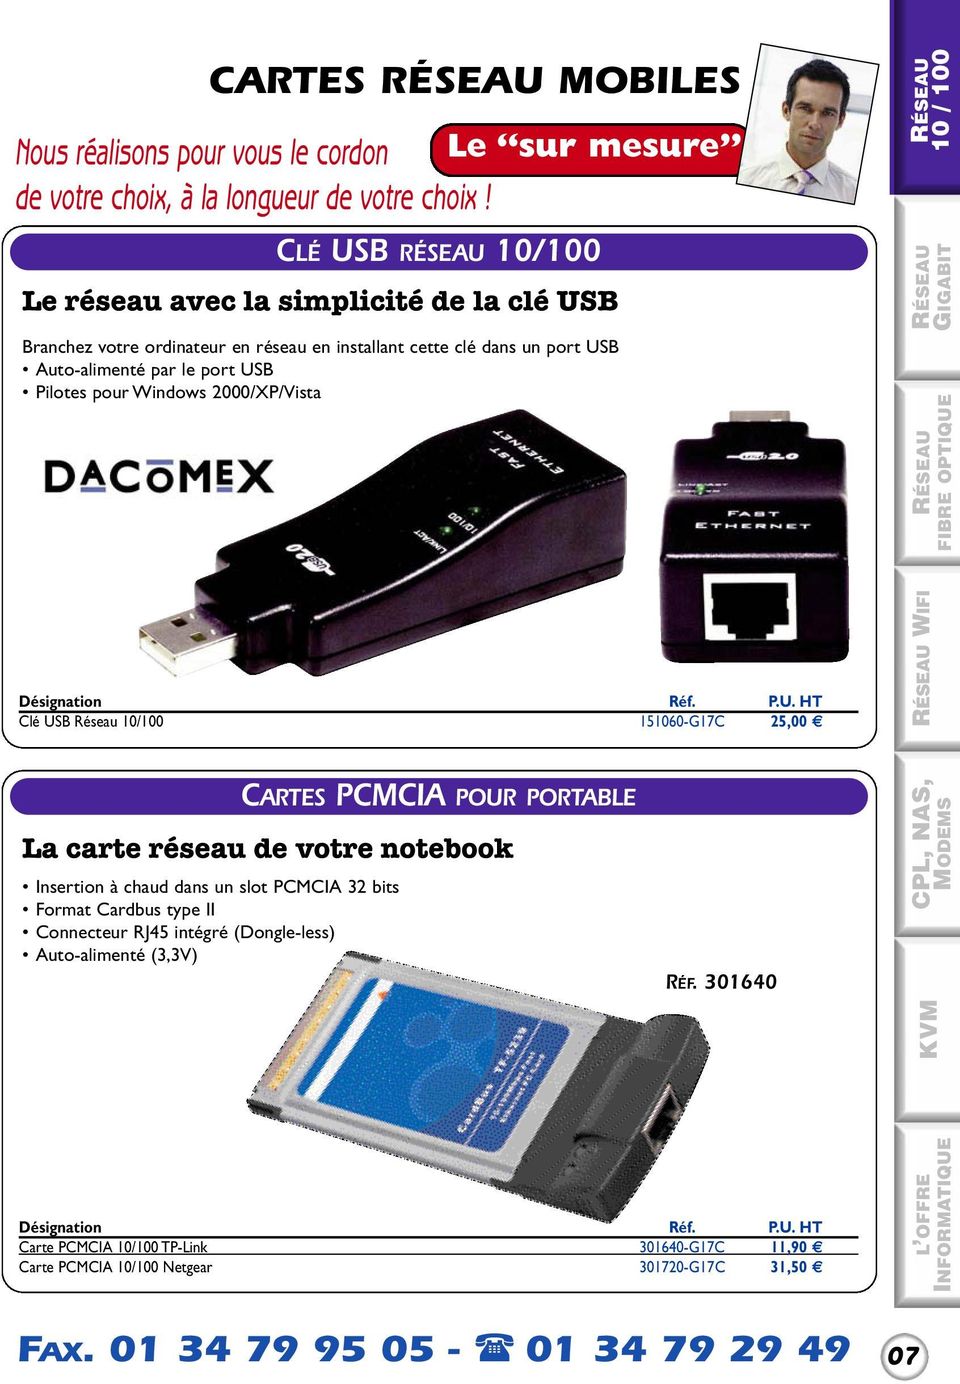 Pilotes pour Windows 2000/XP/Vista Clé USB Réseau 10/100 151060-G17C 25,00 WIFI Insertion à chaud dans un slot PCMCIA 32 bits Format Cardbus type II Connecteur RJ45